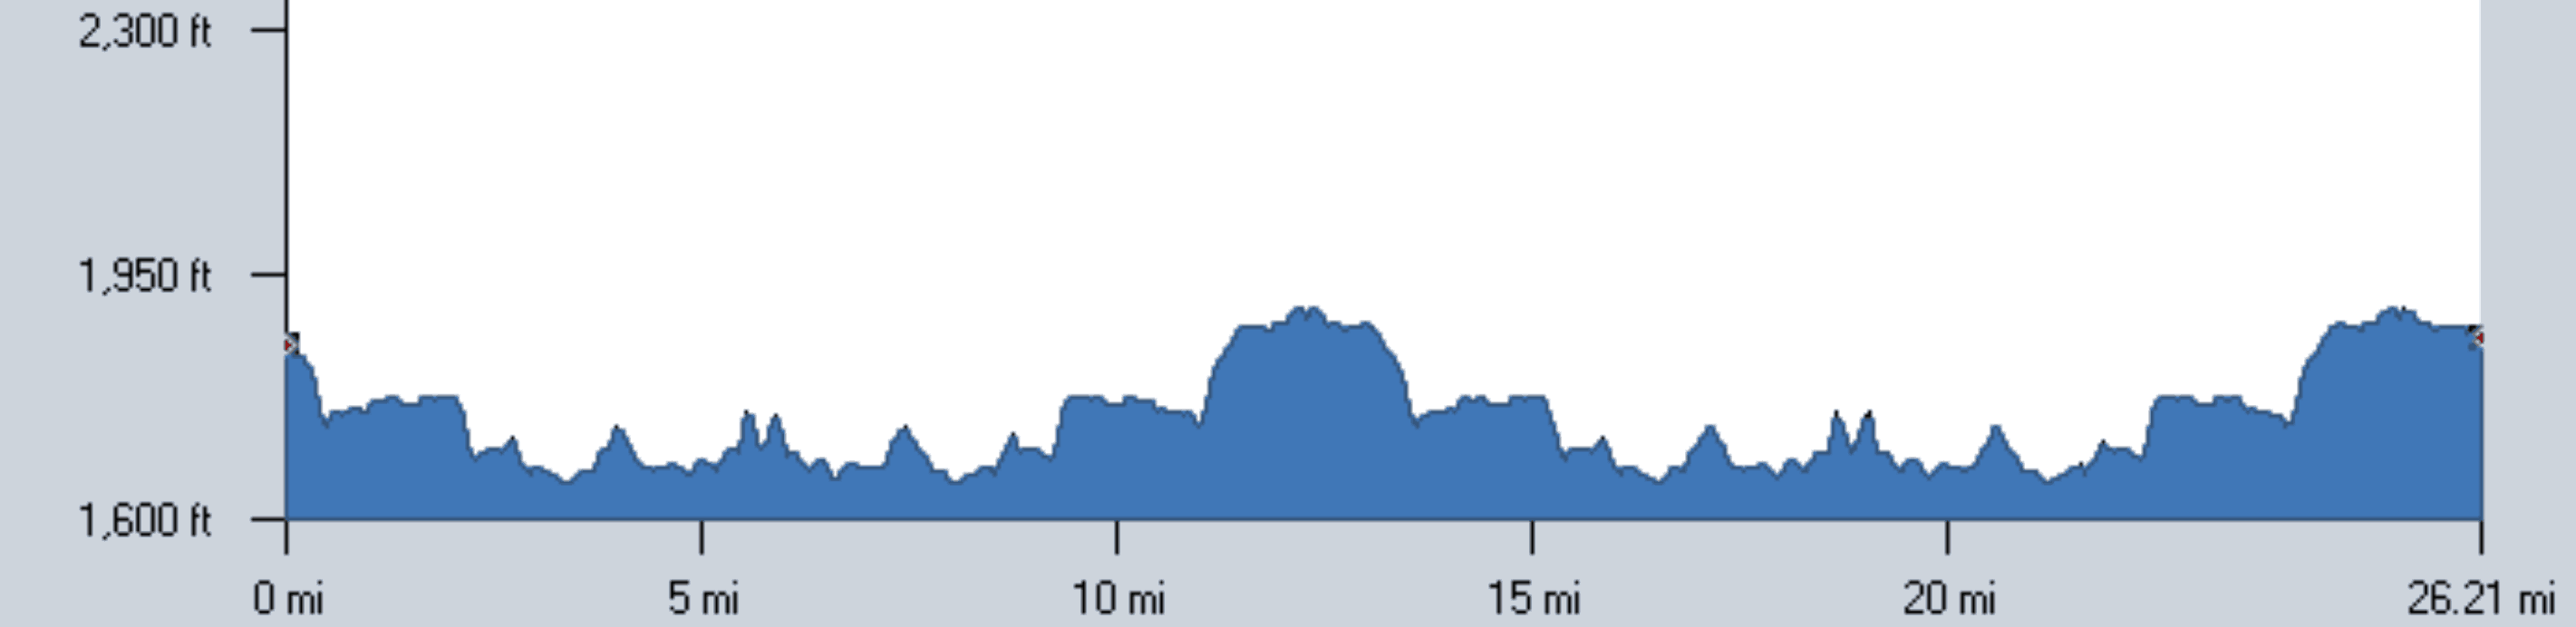 Adirondack Marathon Elevation Chart